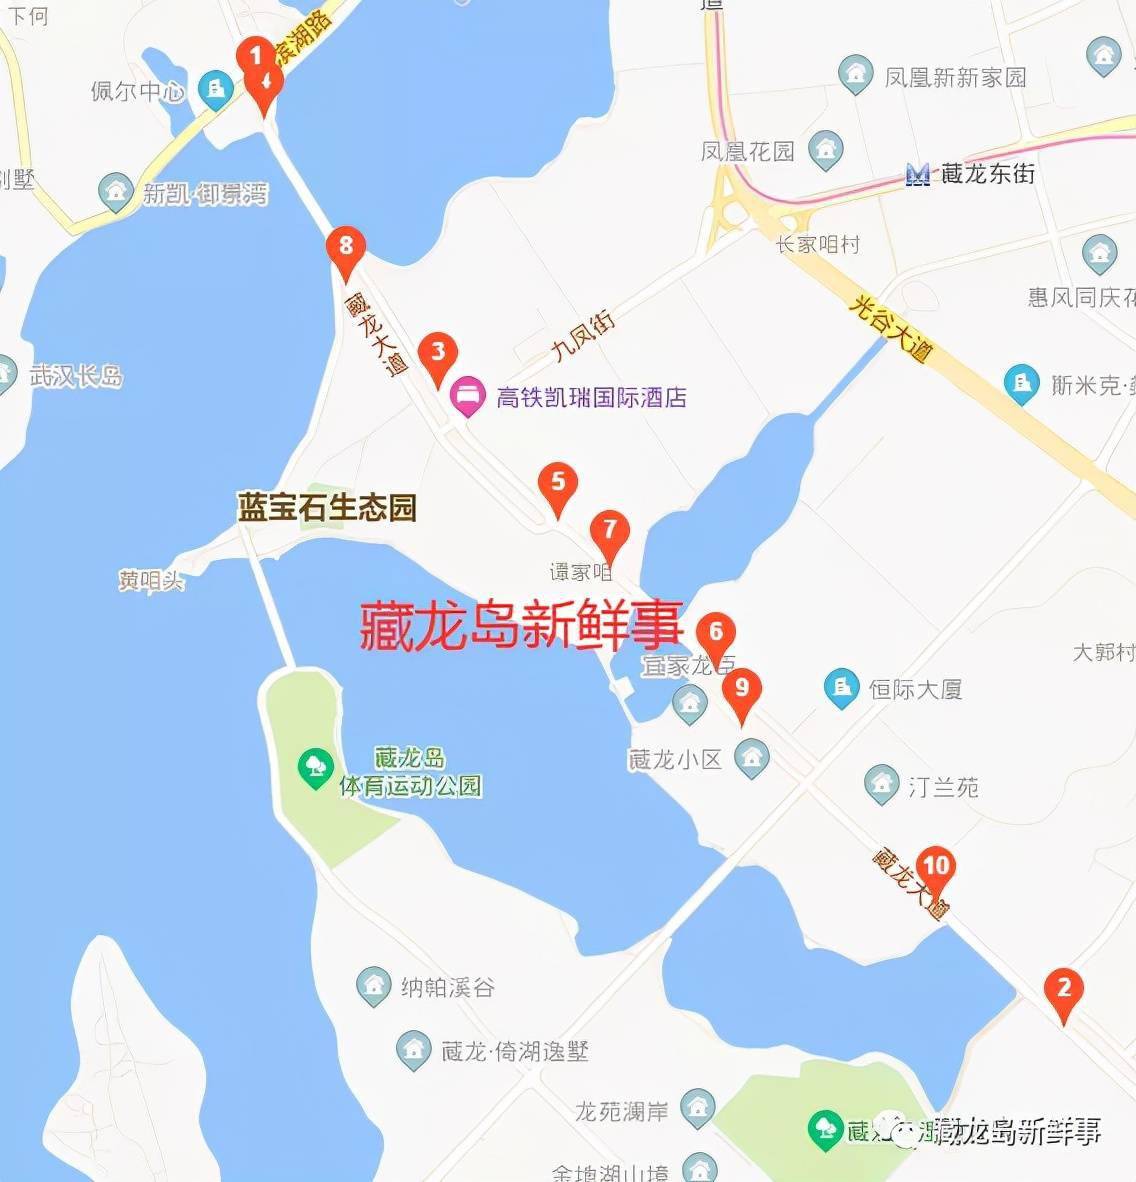 江夏藏龙岛这个区域何时增加大型综合商业体?回应来了